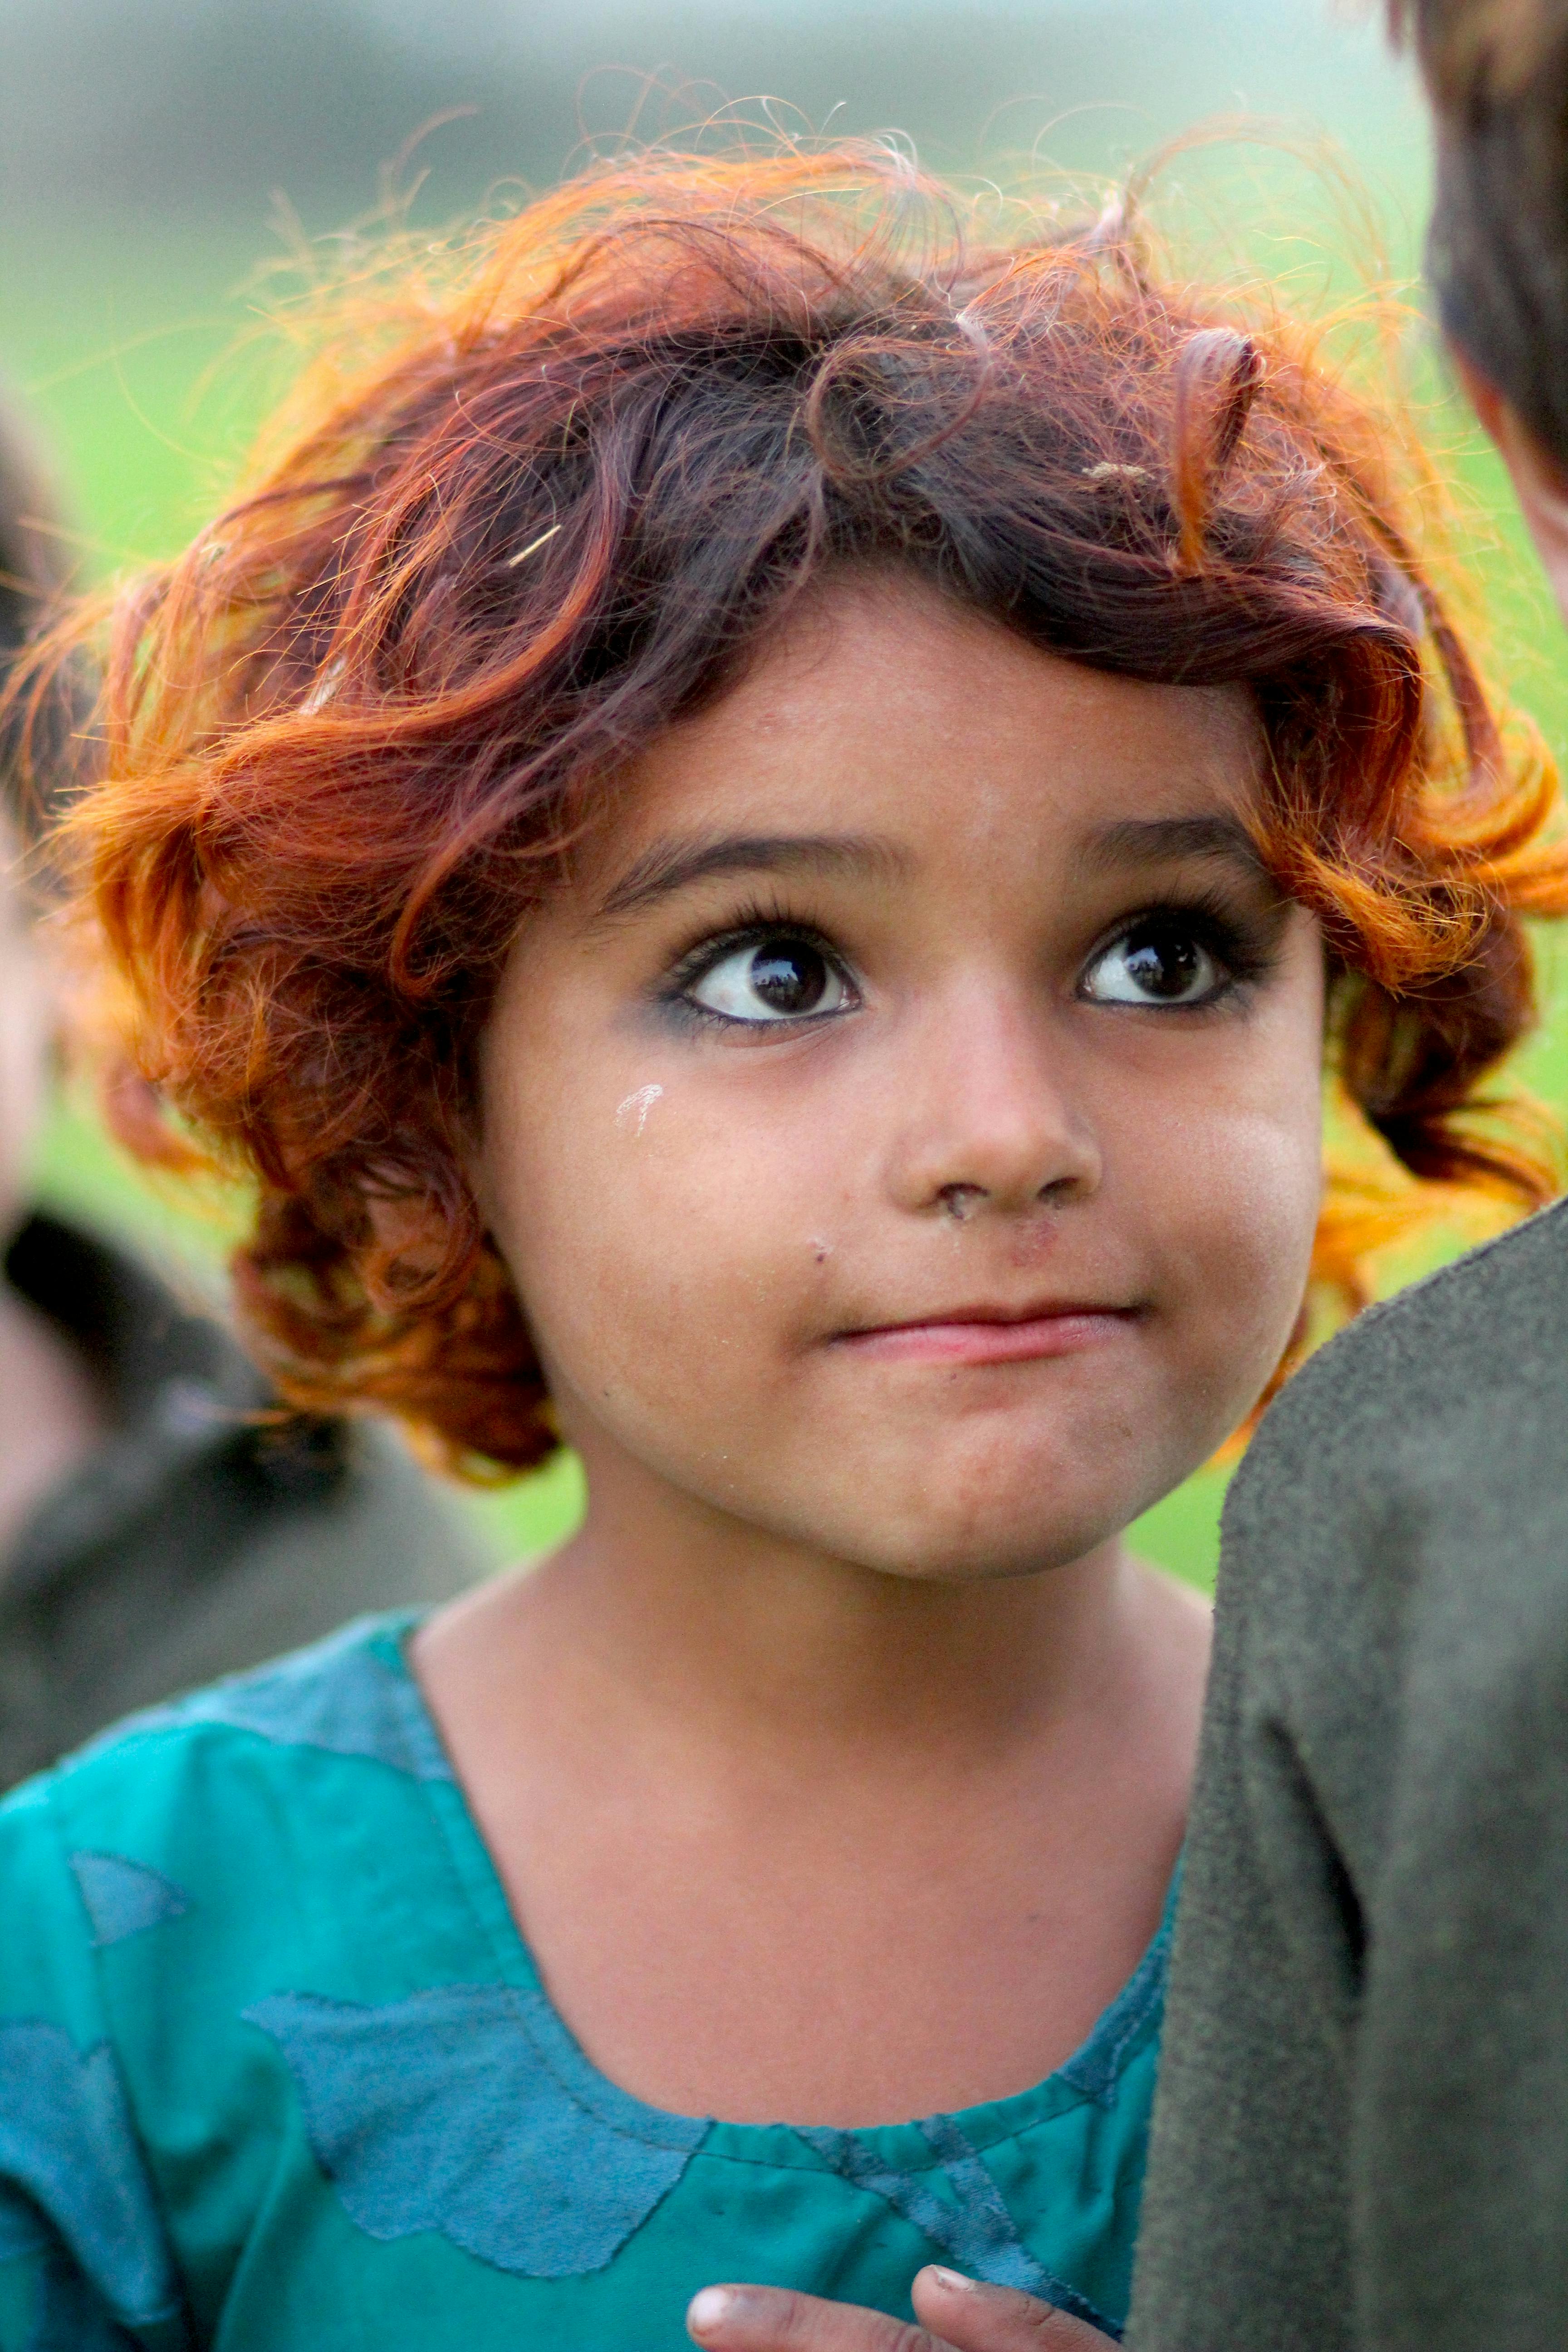 a villager little girl